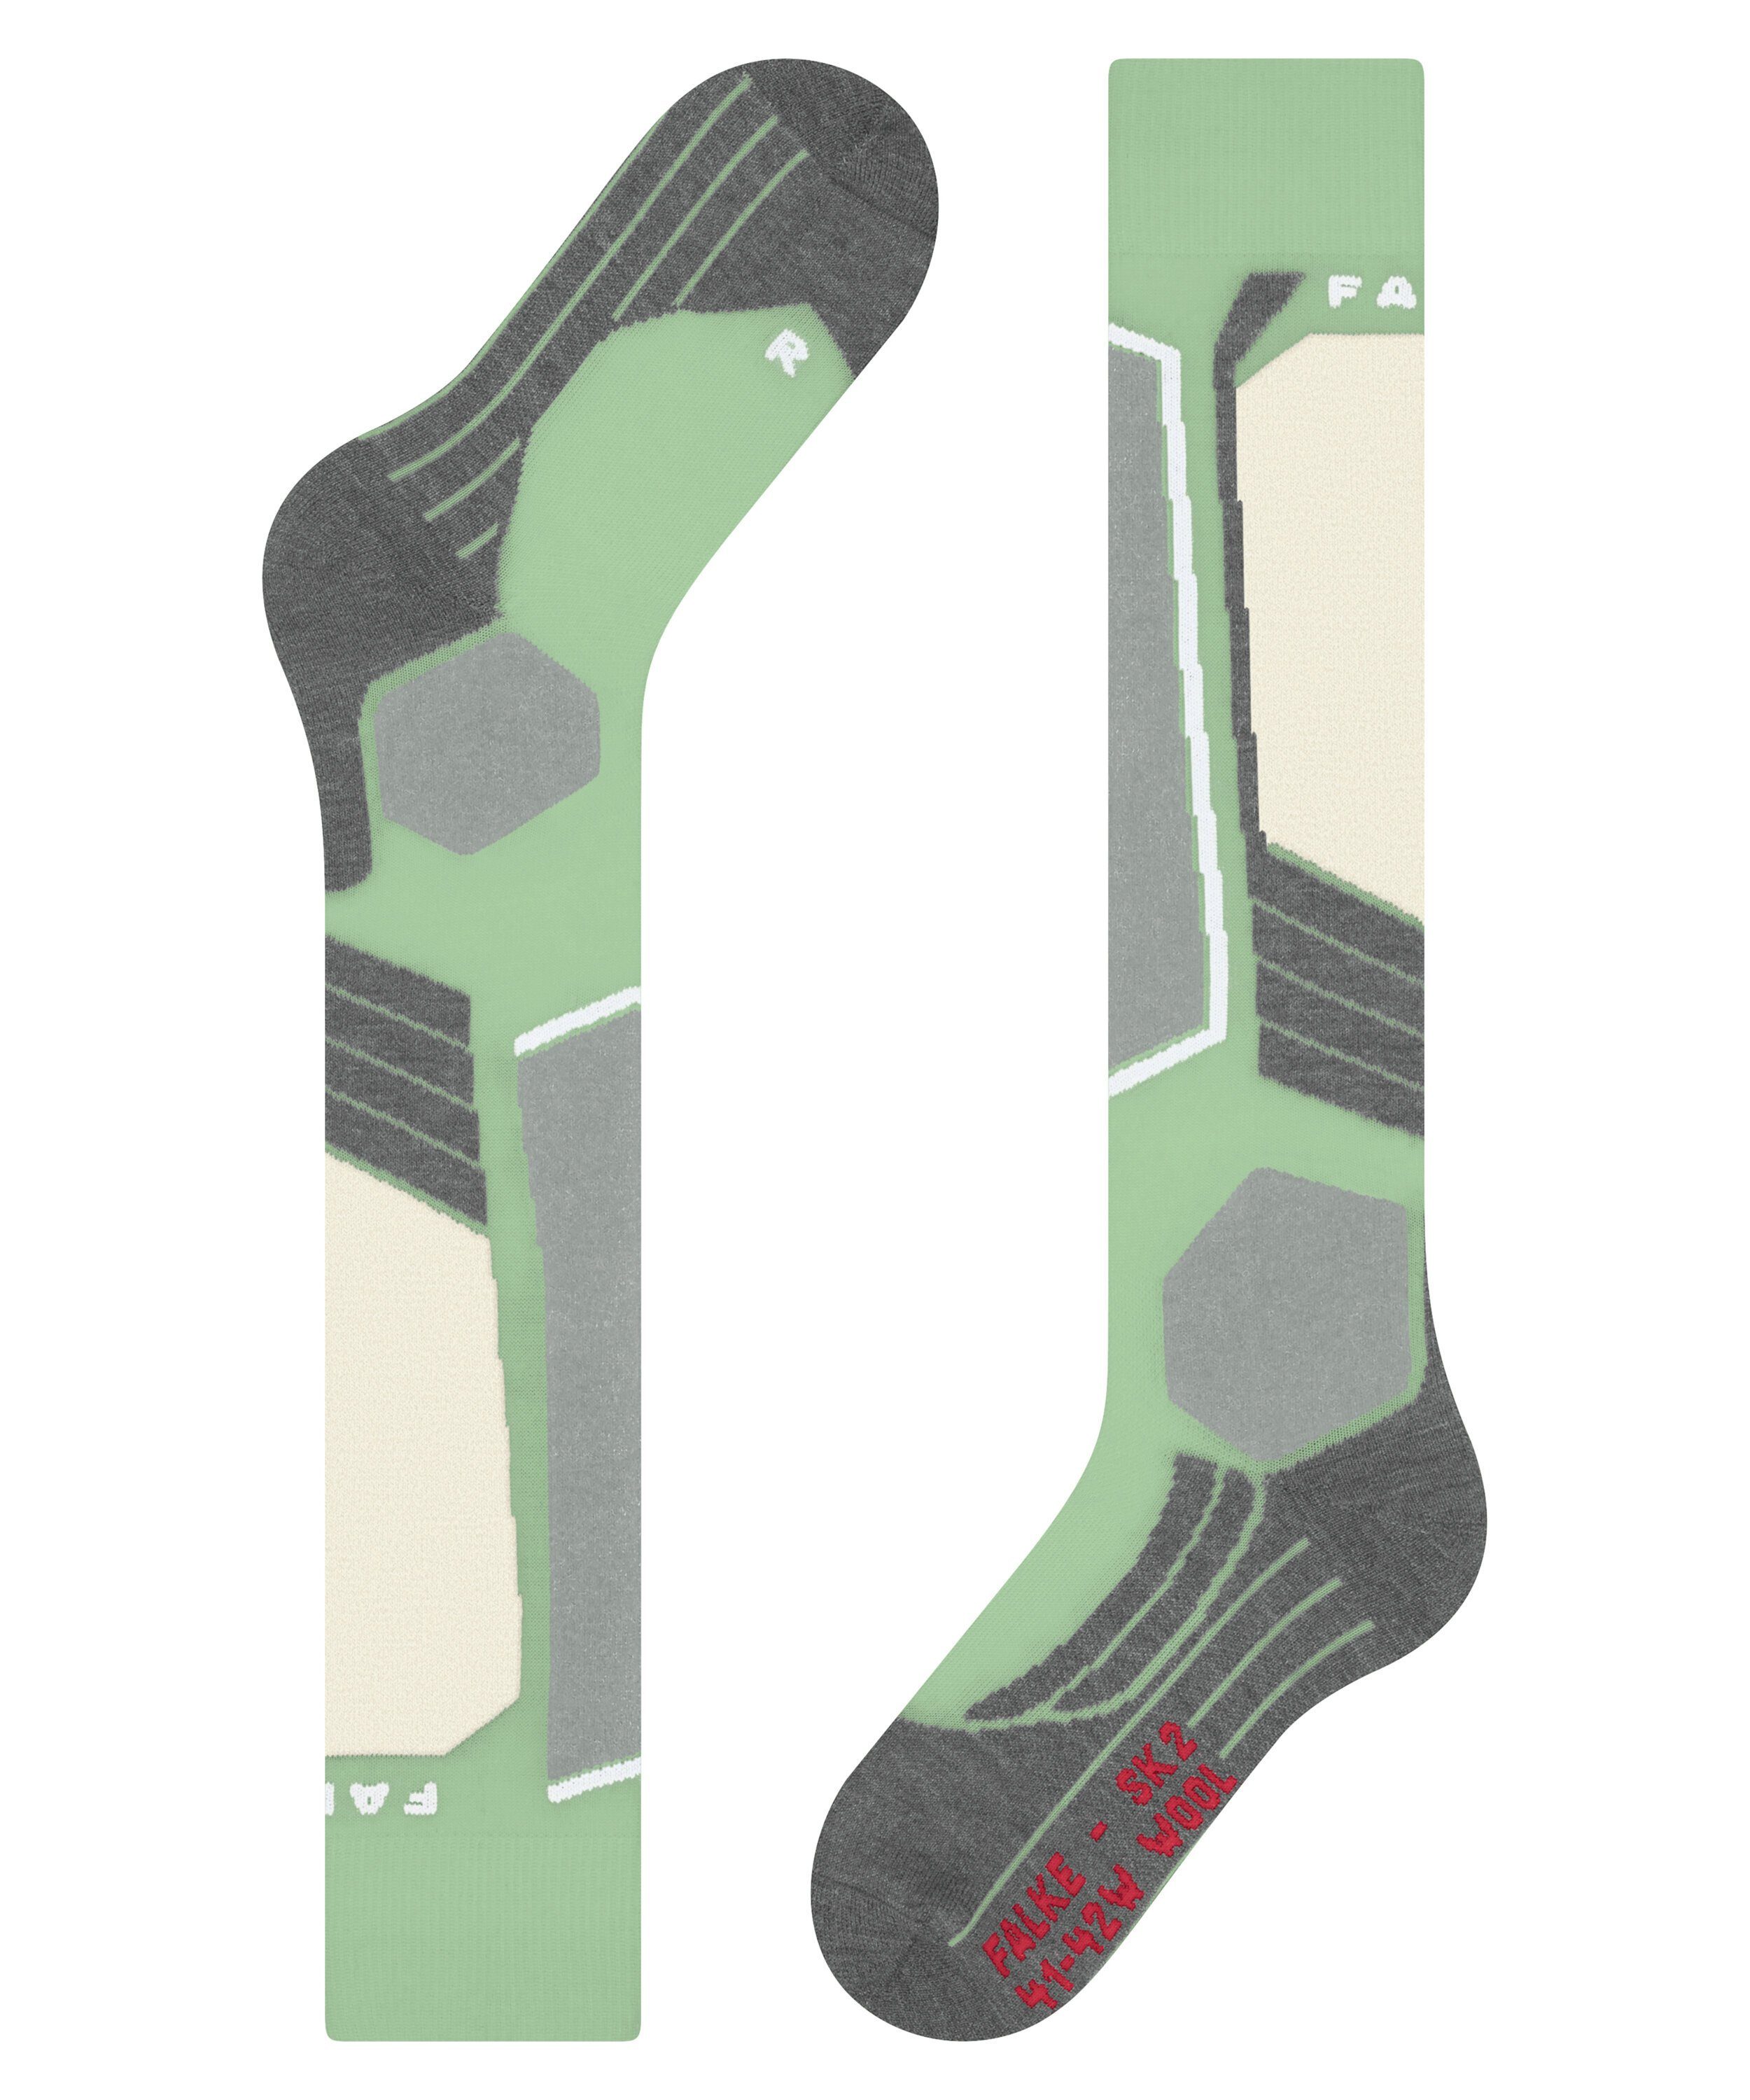 FALKE Skisocken SK2 Intermediate mit und green für (7378) (1-Paar) quiet mittelstarker Wool Polsterung Komfort Kontrolle